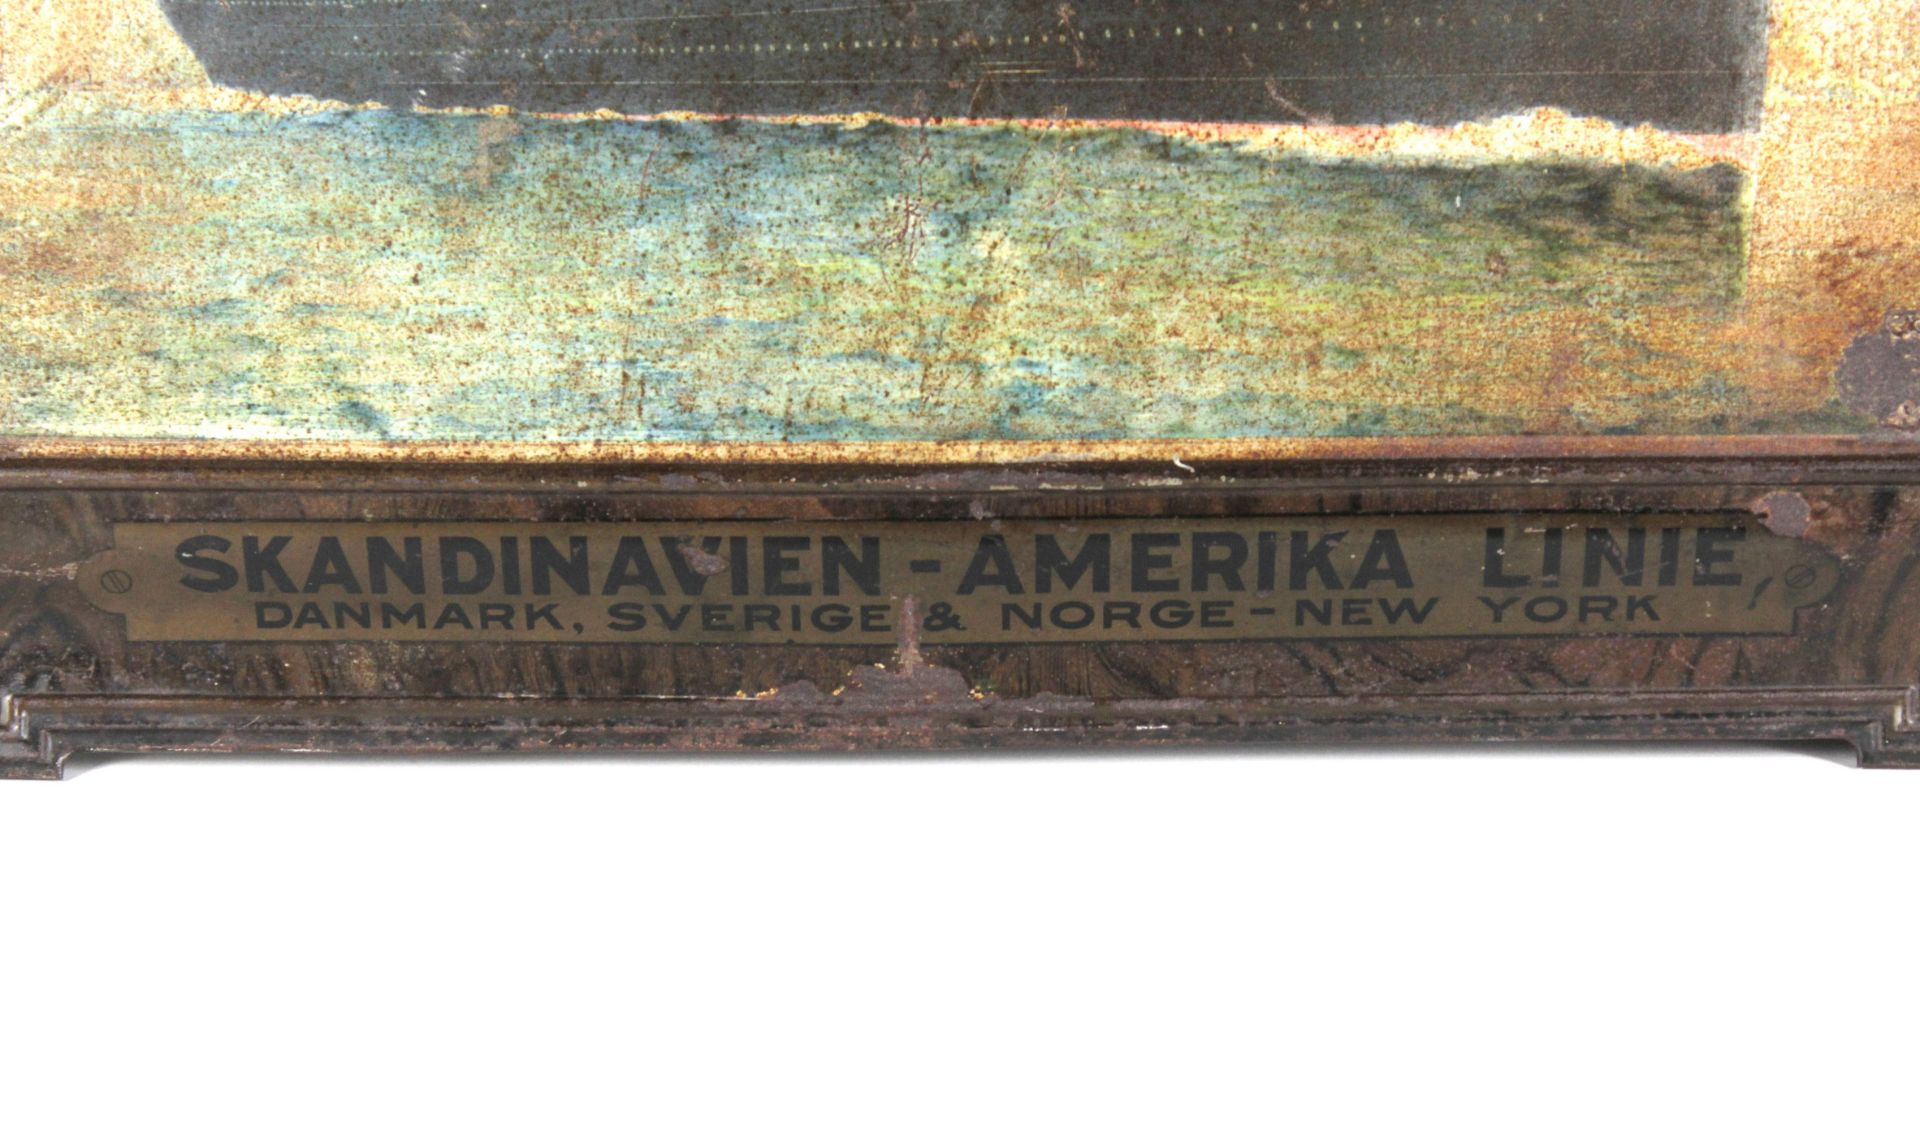 Werbeschild der Skandinavien-Amerika Linie - Bild 2 aus 4